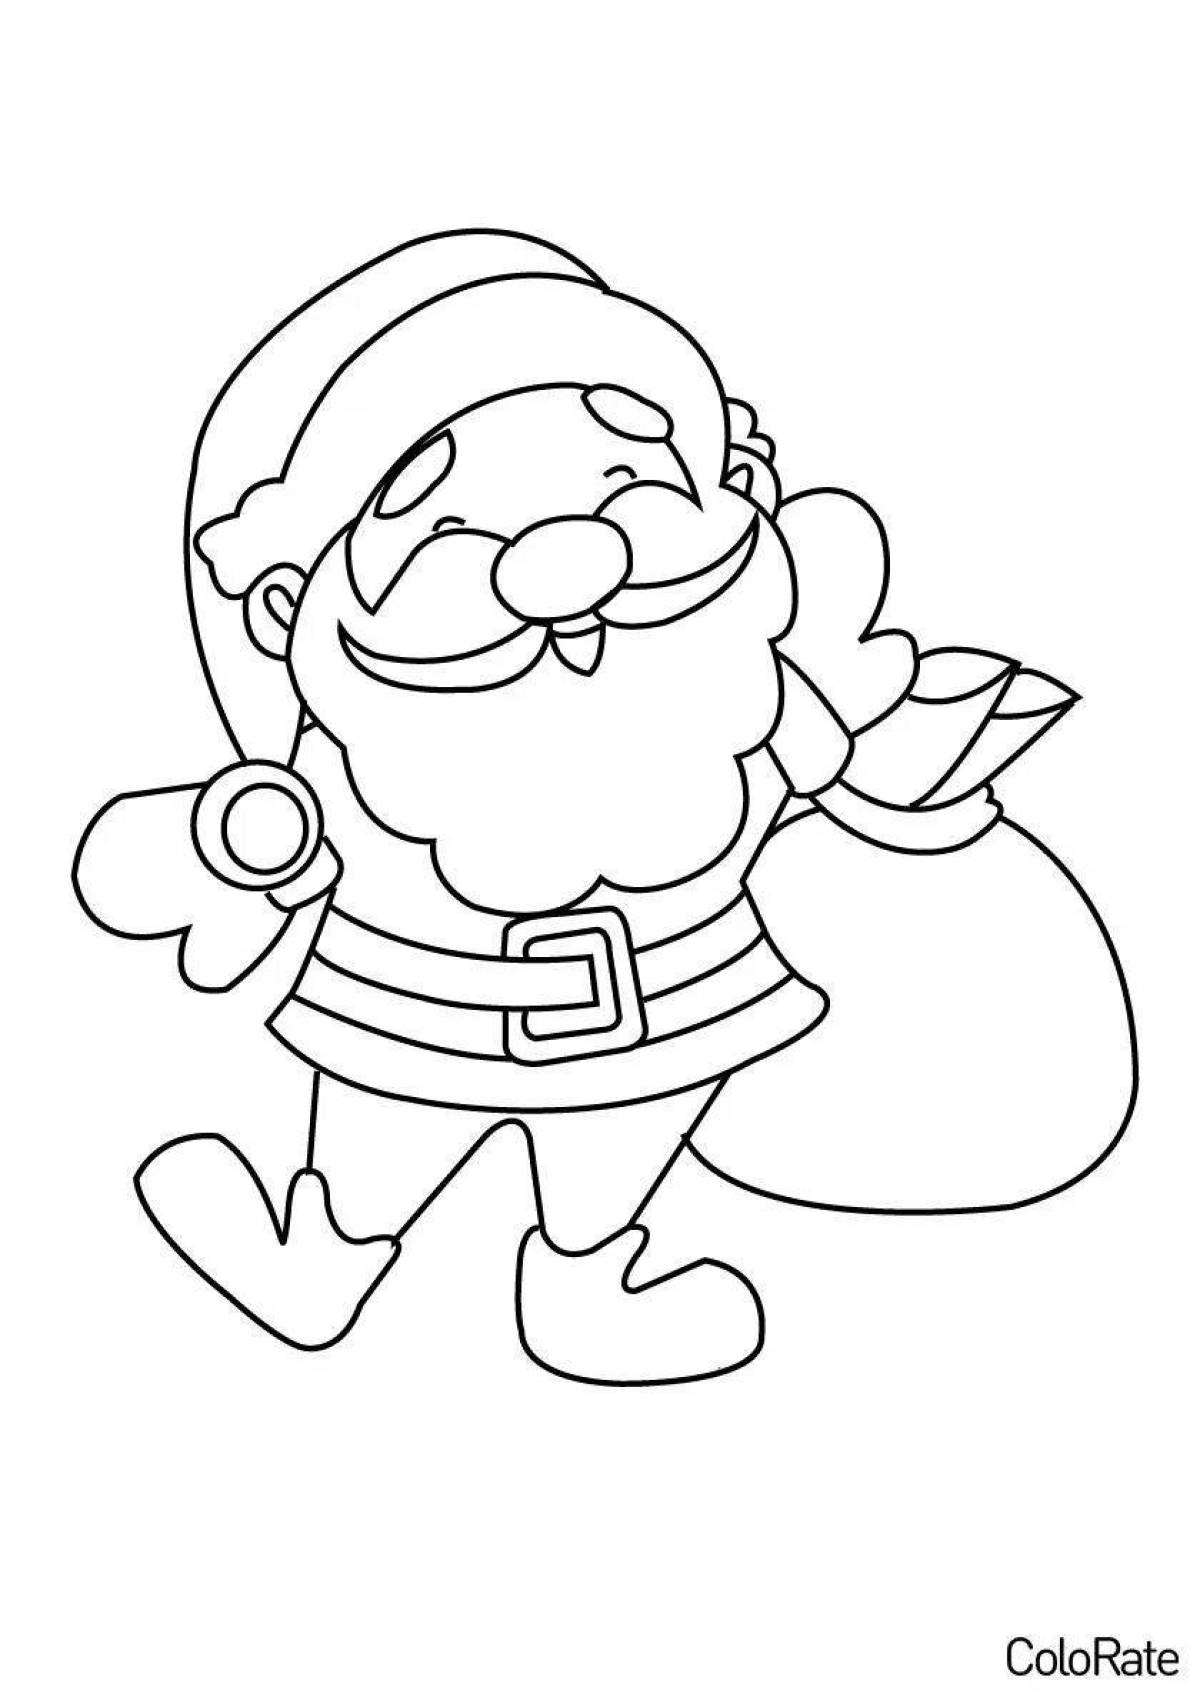 Great Santa Claus coloring book